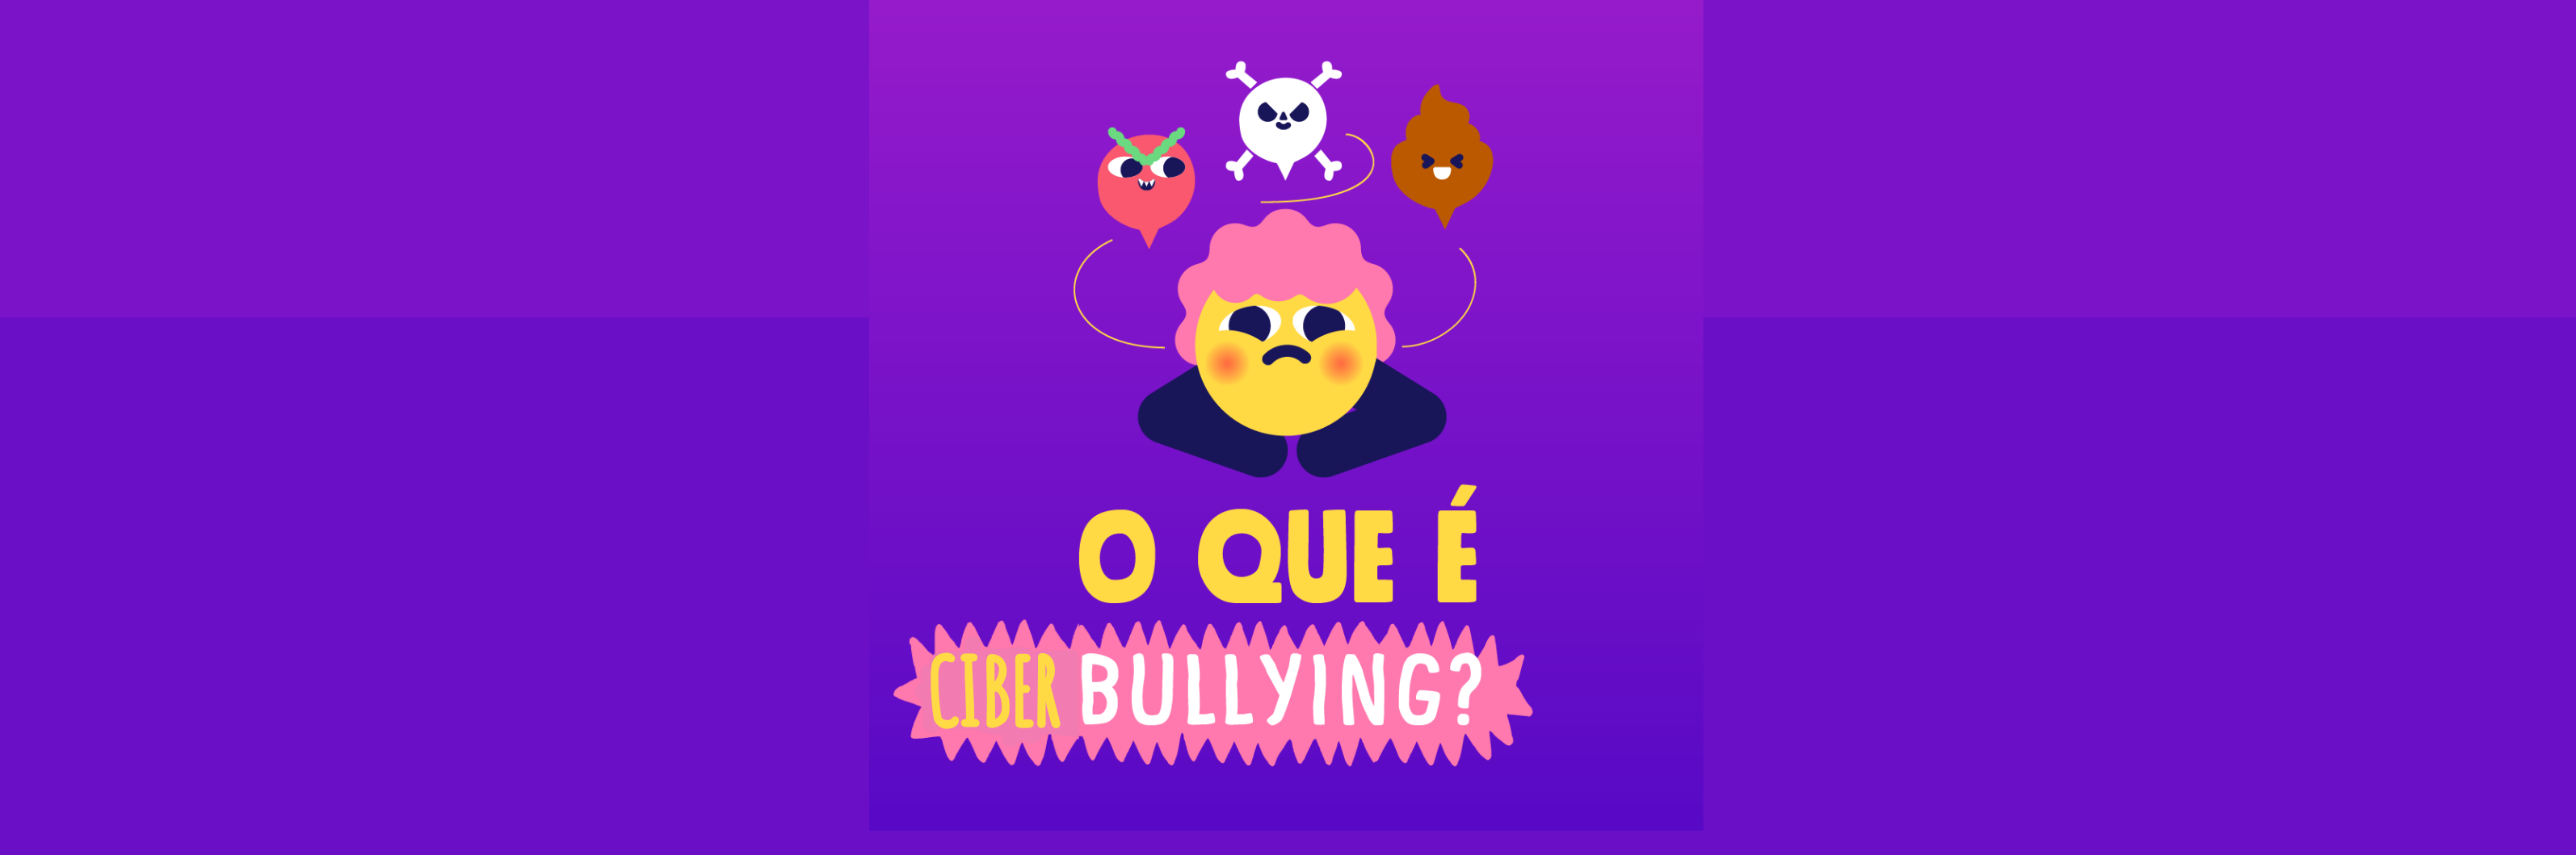 Atentos ao bullying e ciberbylling – EDUCOM